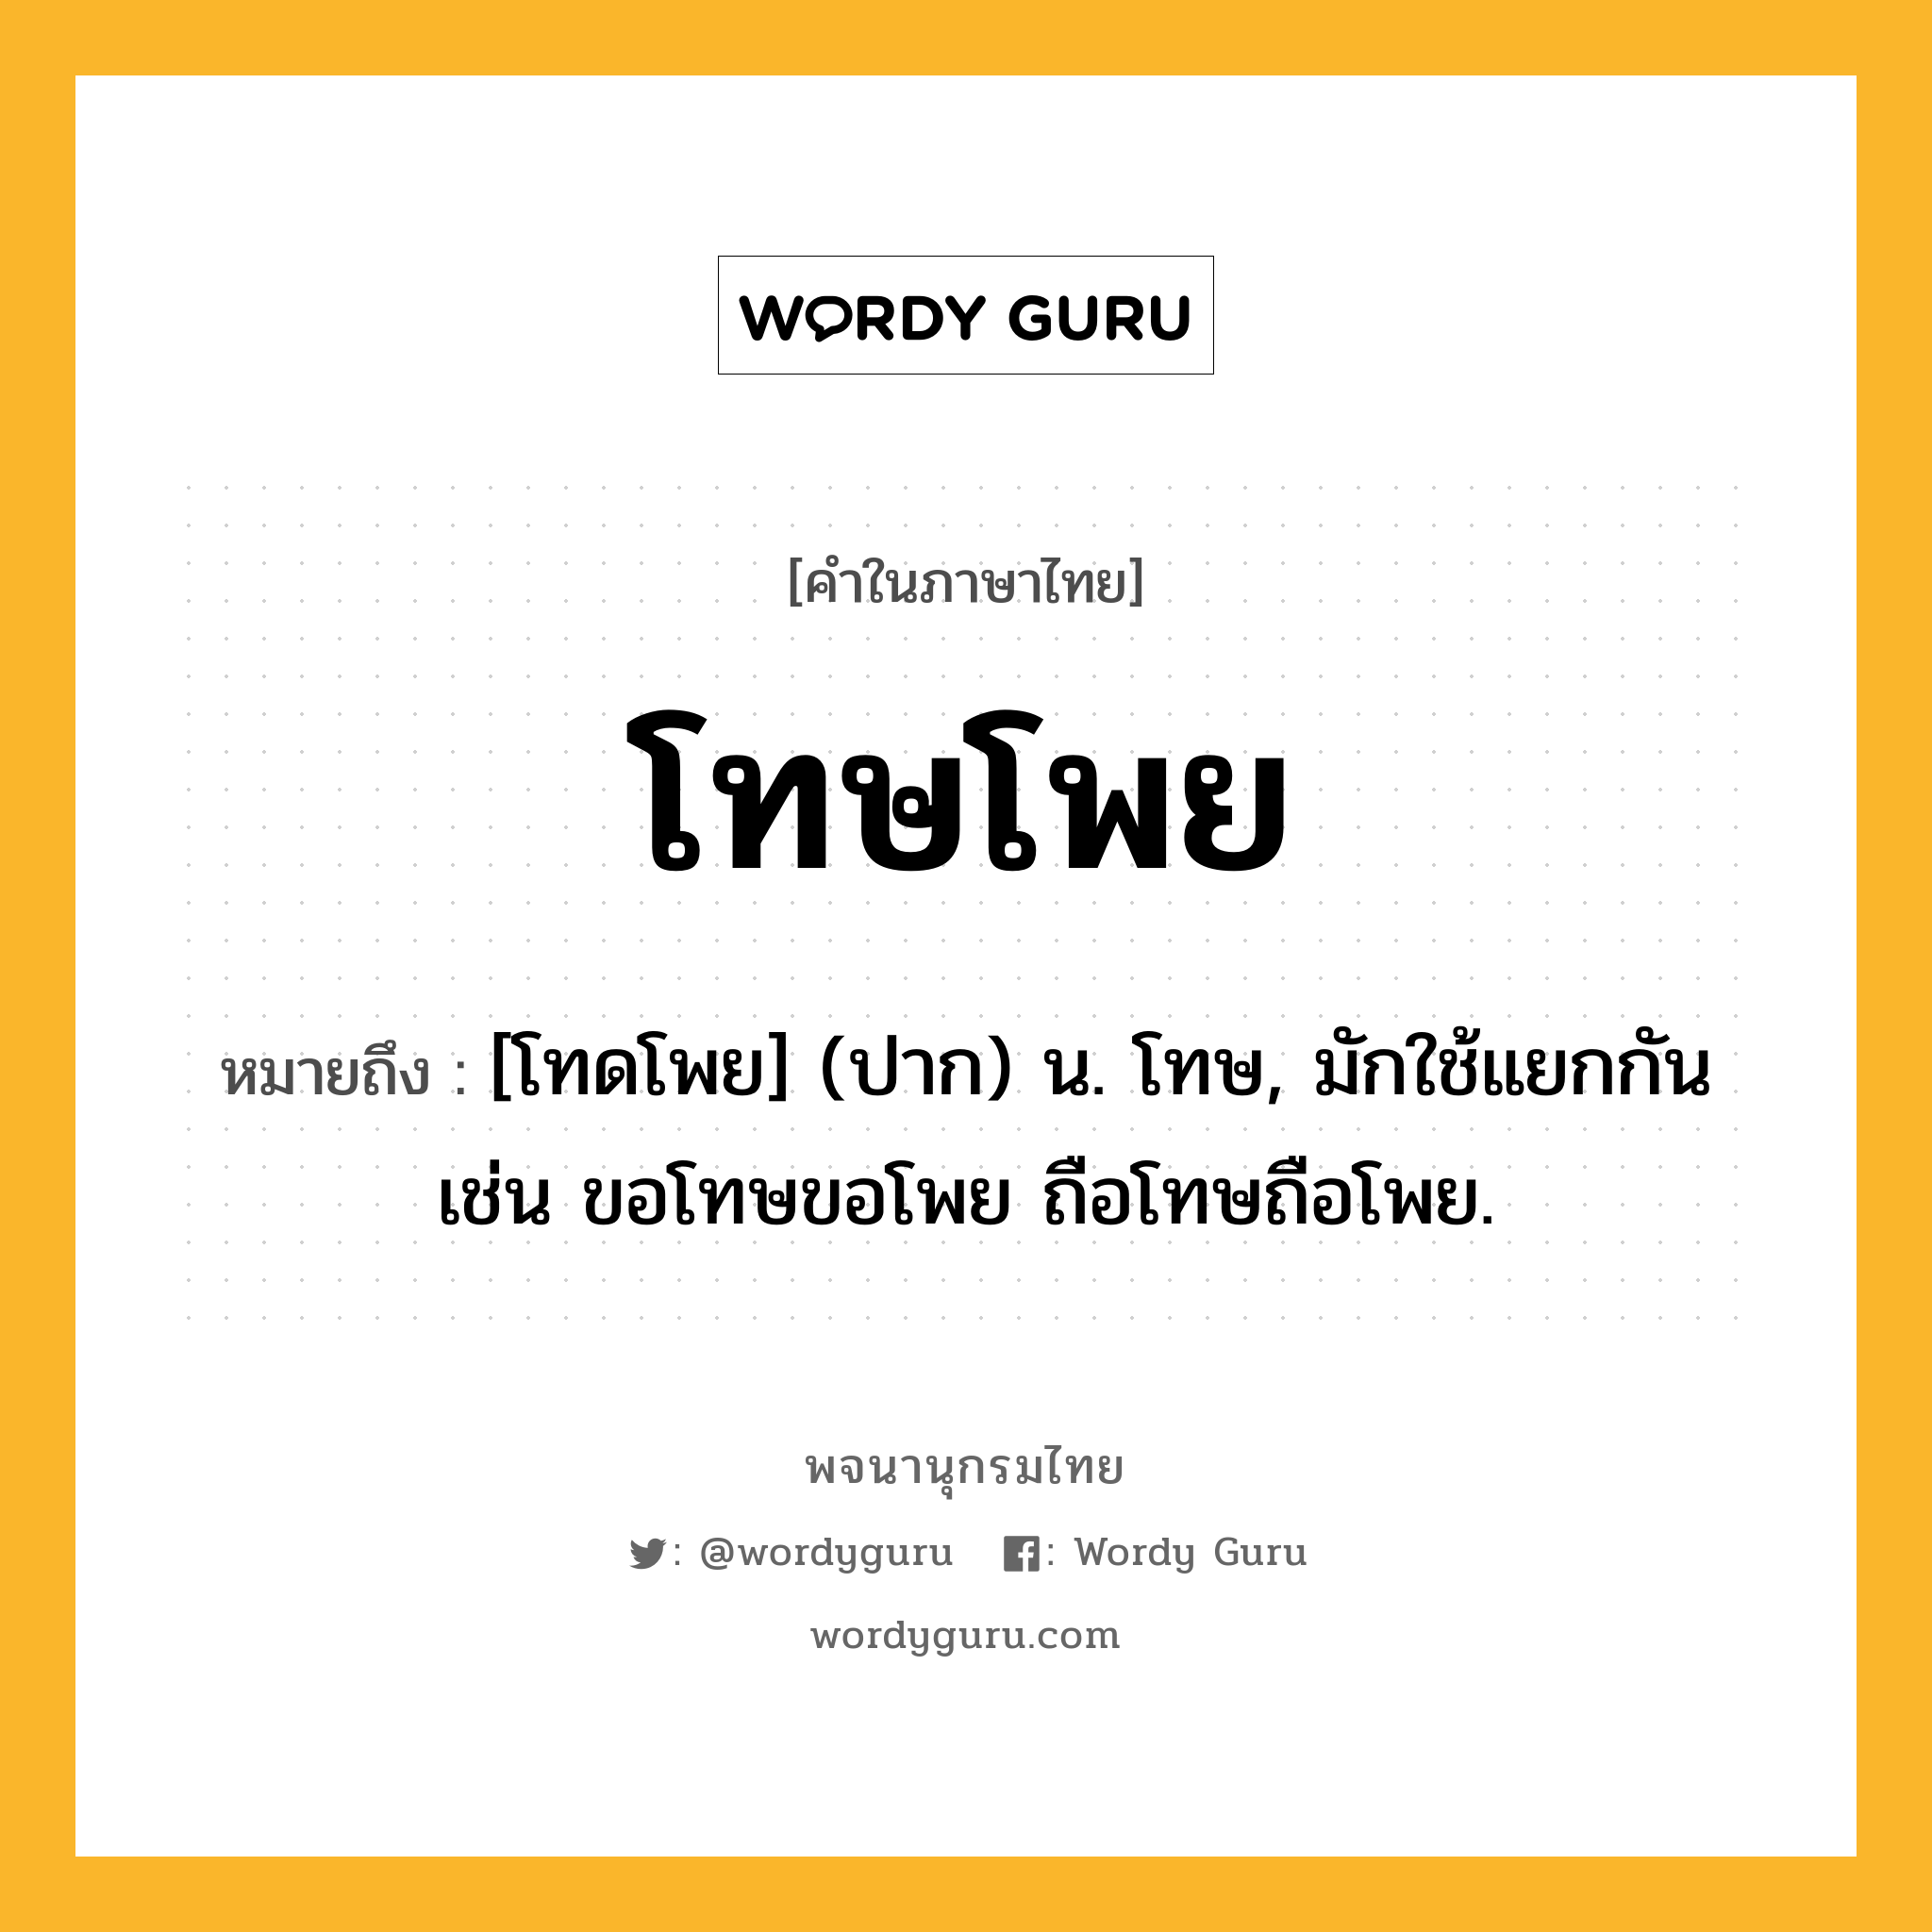 โทษโพย ความหมาย หมายถึงอะไร?, คำในภาษาไทย โทษโพย หมายถึง [โทดโพย] (ปาก) น. โทษ, มักใช้แยกกัน เช่น ขอโทษขอโพย ถือโทษถือโพย.